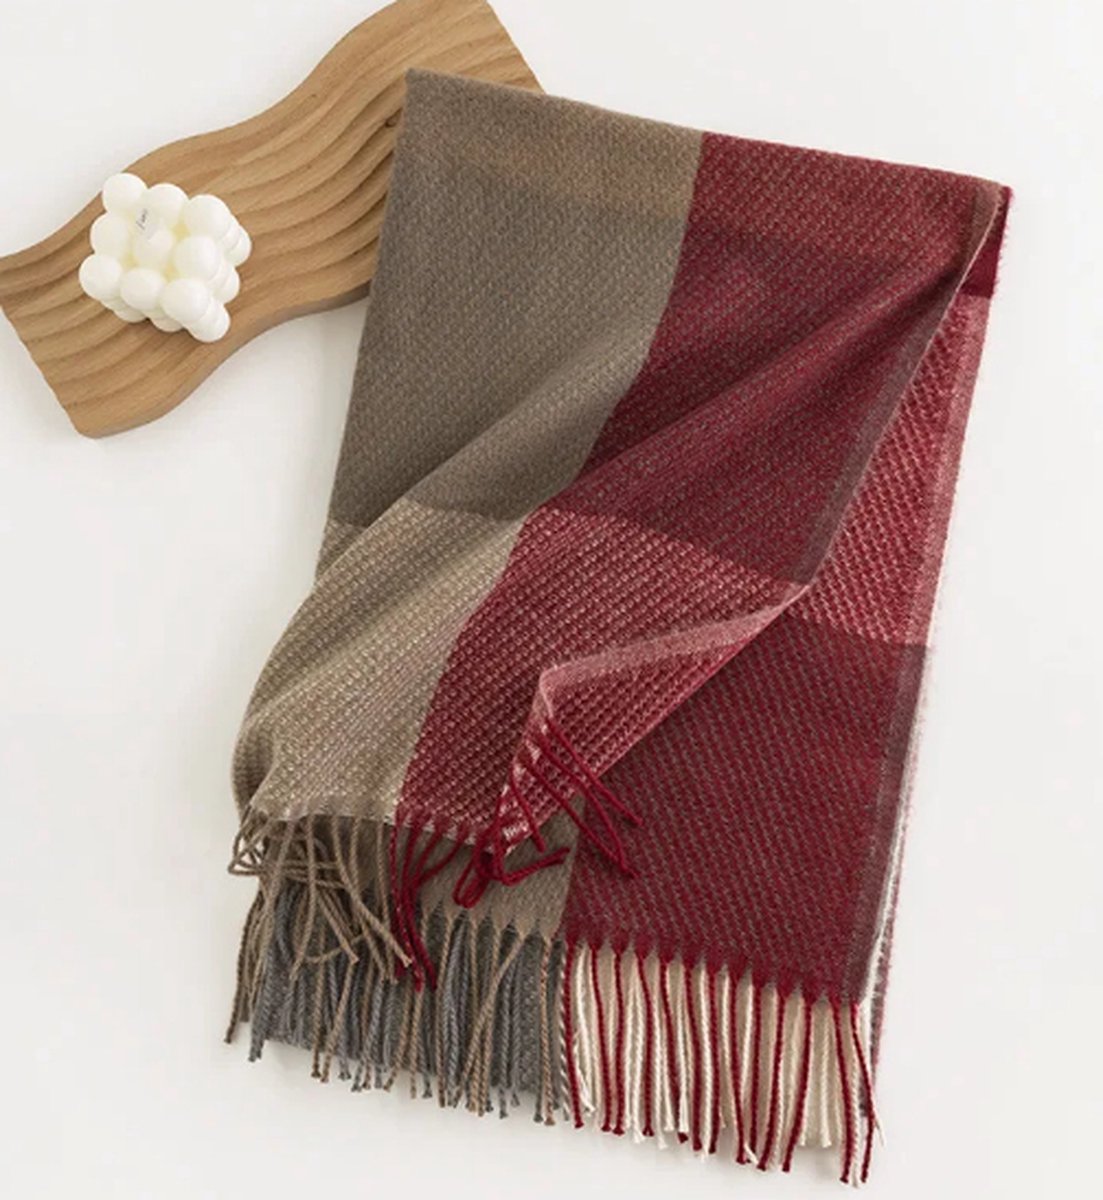 Sjaal rood/Taupe / super zacht / 206 cm lang en 65 cm breed / verkrijgbaar in 10 verschillende kleuren